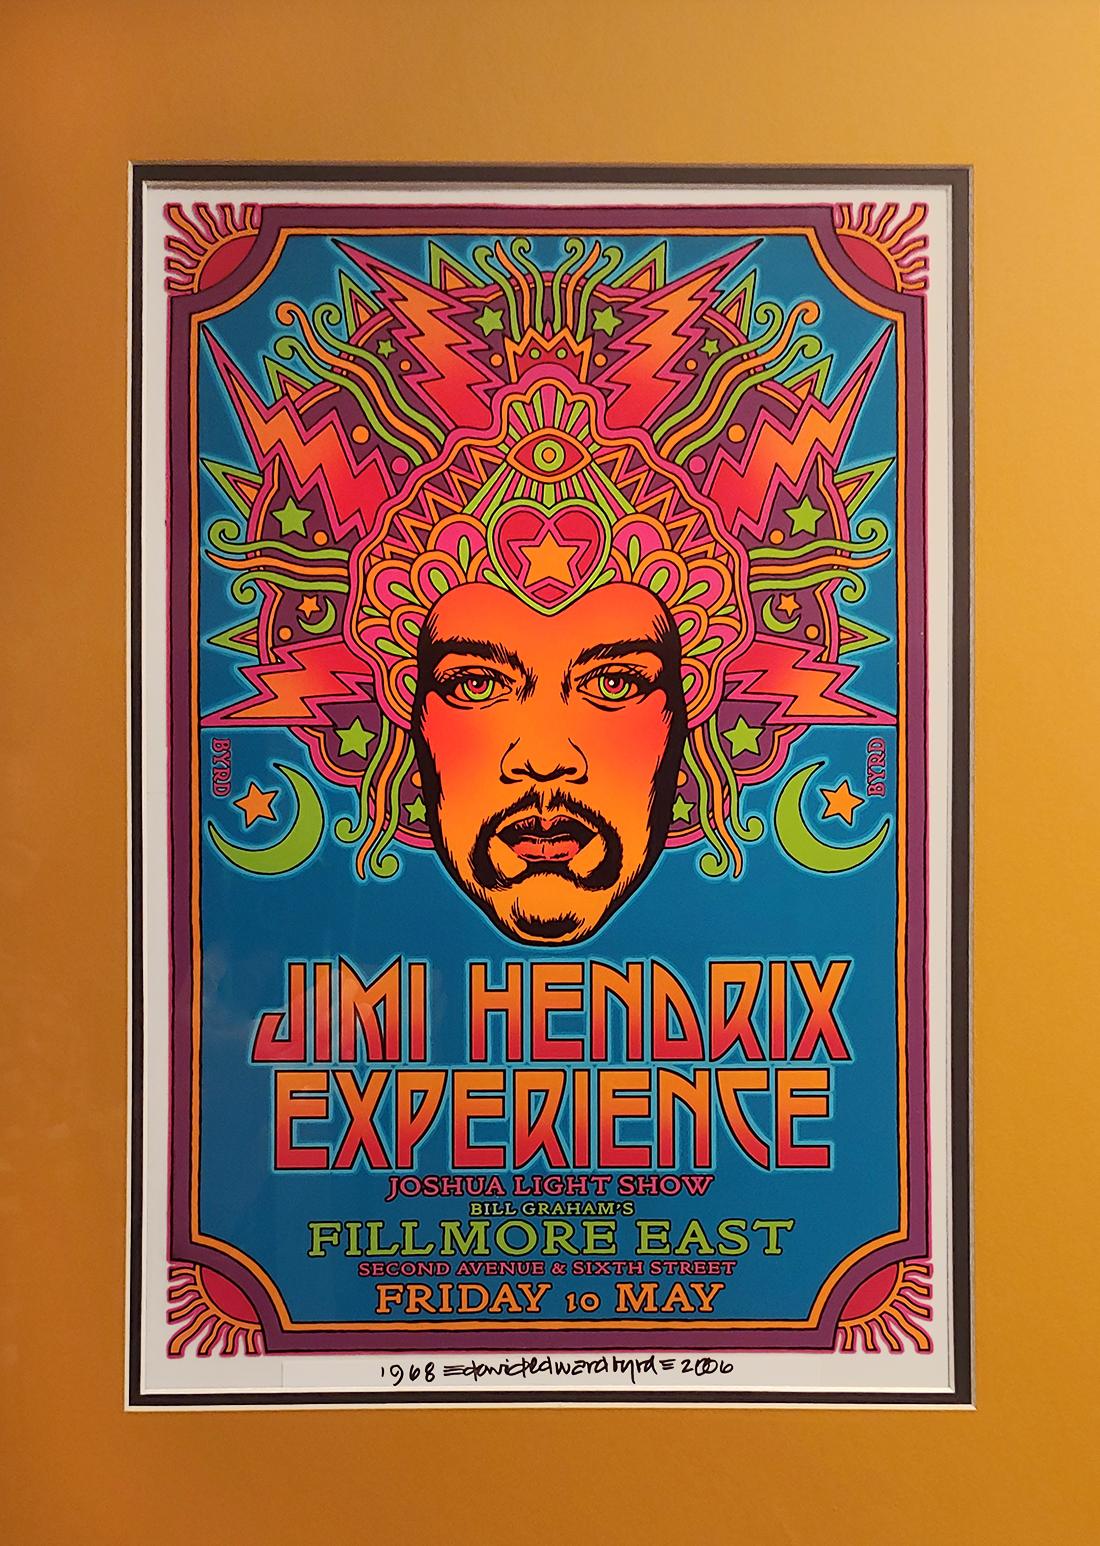 Peinture originale de Jimi Hendrix Fillmore East 1968 concept acrylique sur acétate   - Contemporain Painting par David Byrd